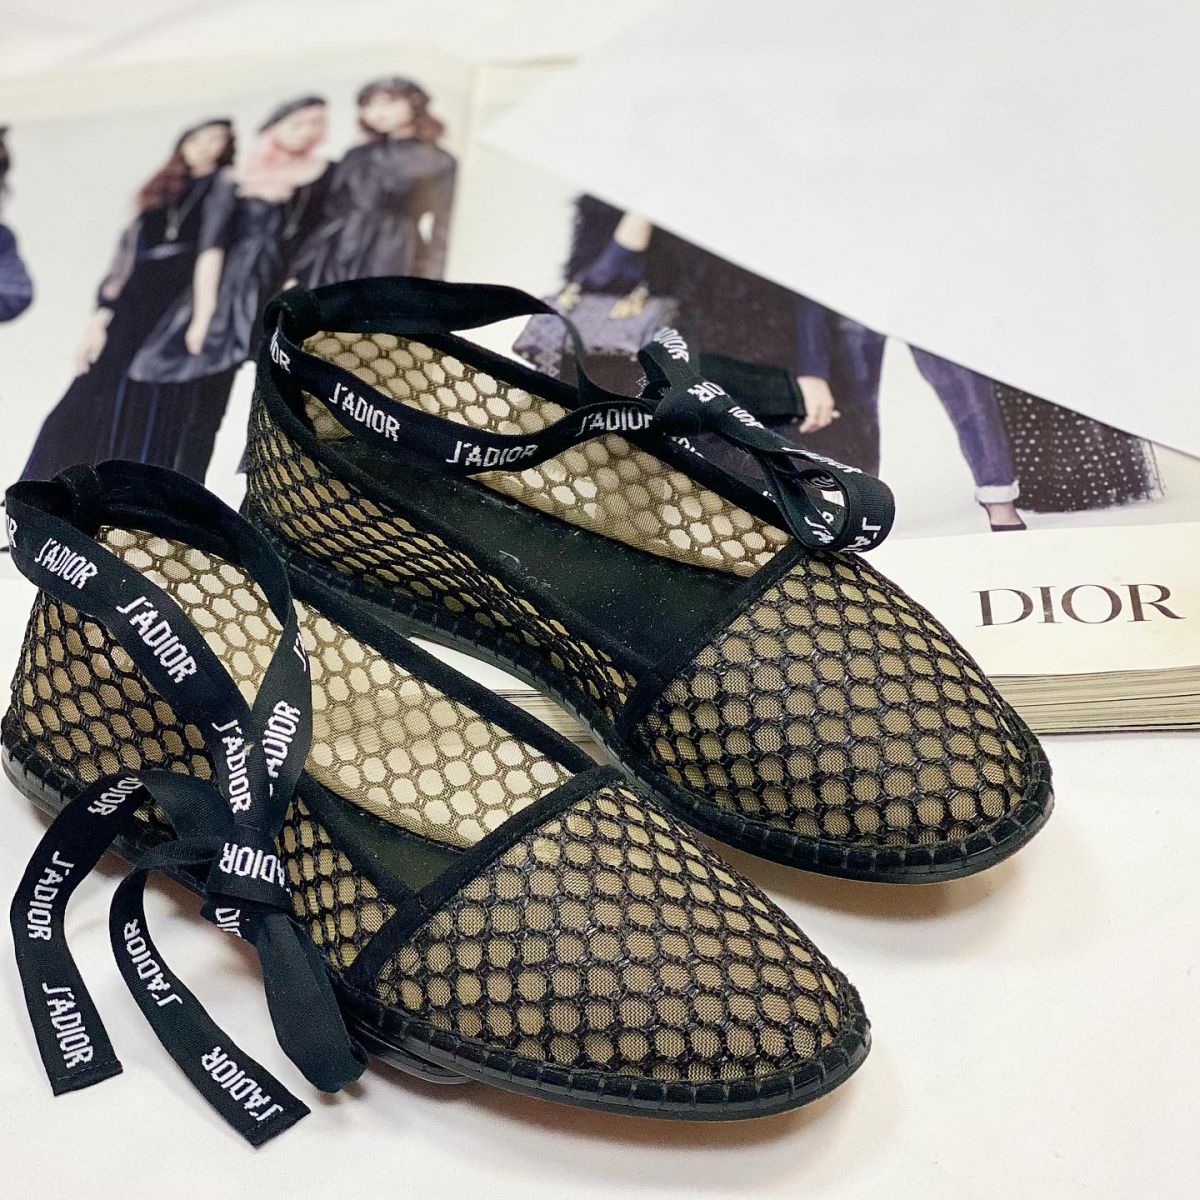 Эспадрильи Christian Dior размер 38 цена 23 078 руб 